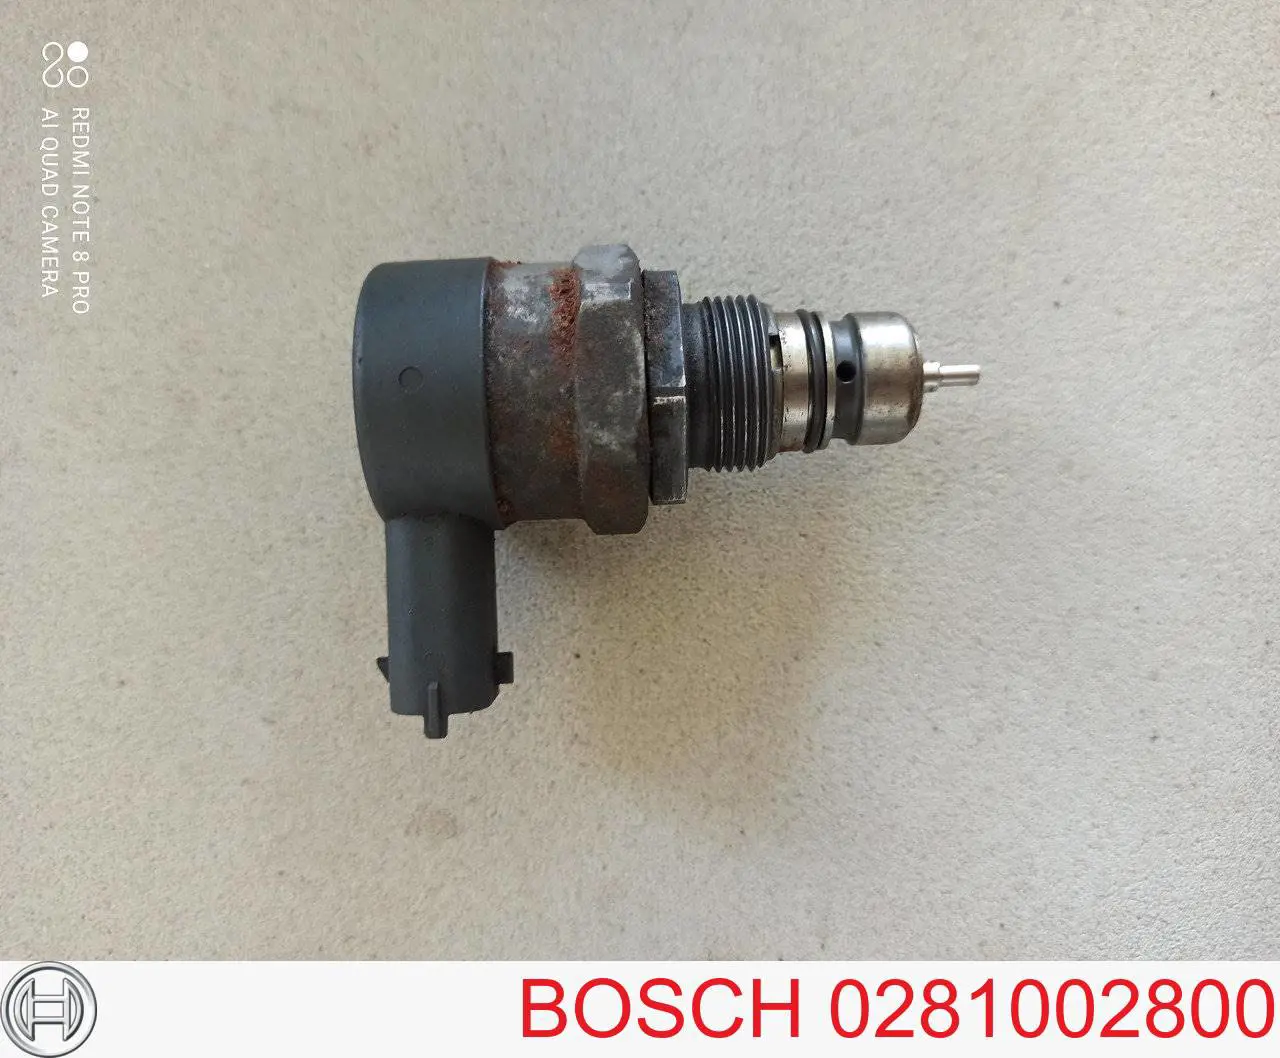 0281002800 Bosch regulador de pressão de combustível na régua de injectores